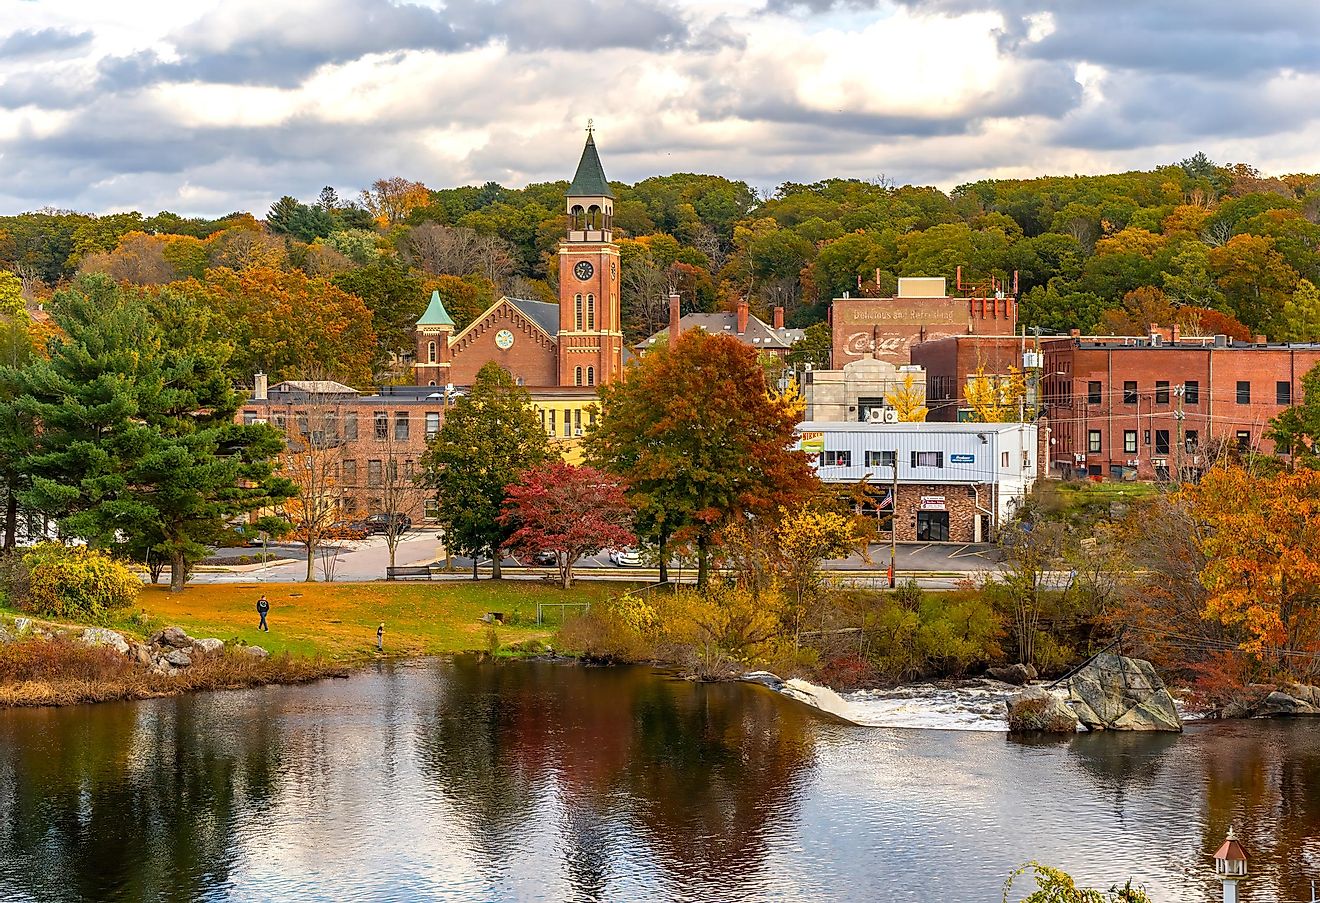 Putnam, Connecticut in the fall.